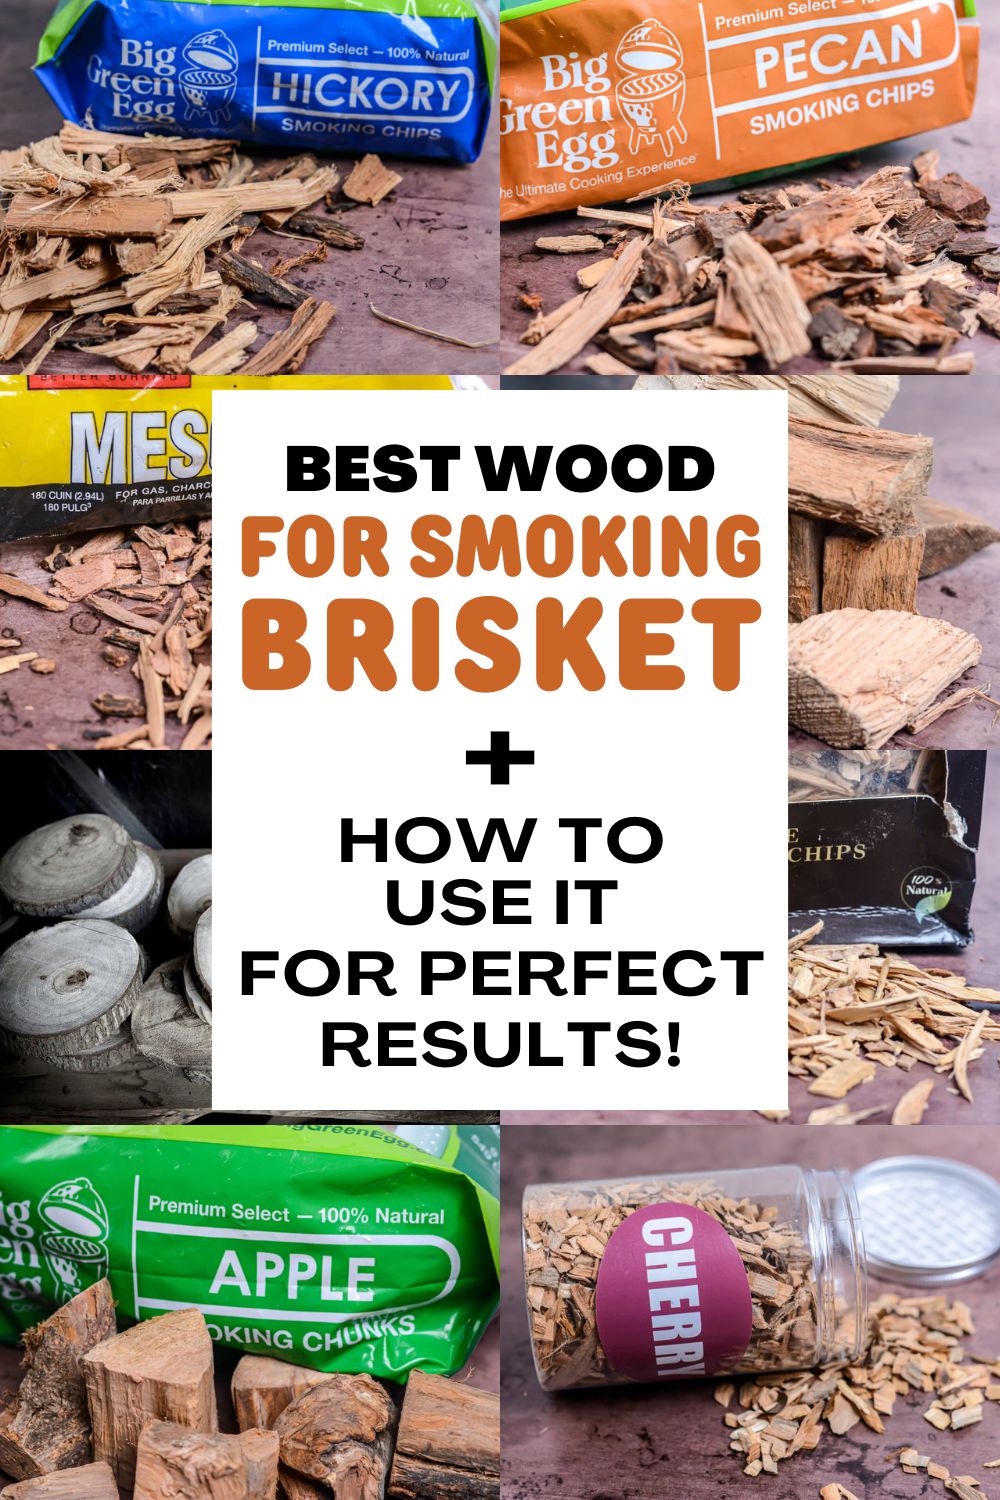 Best Wood For Smoking Brisket